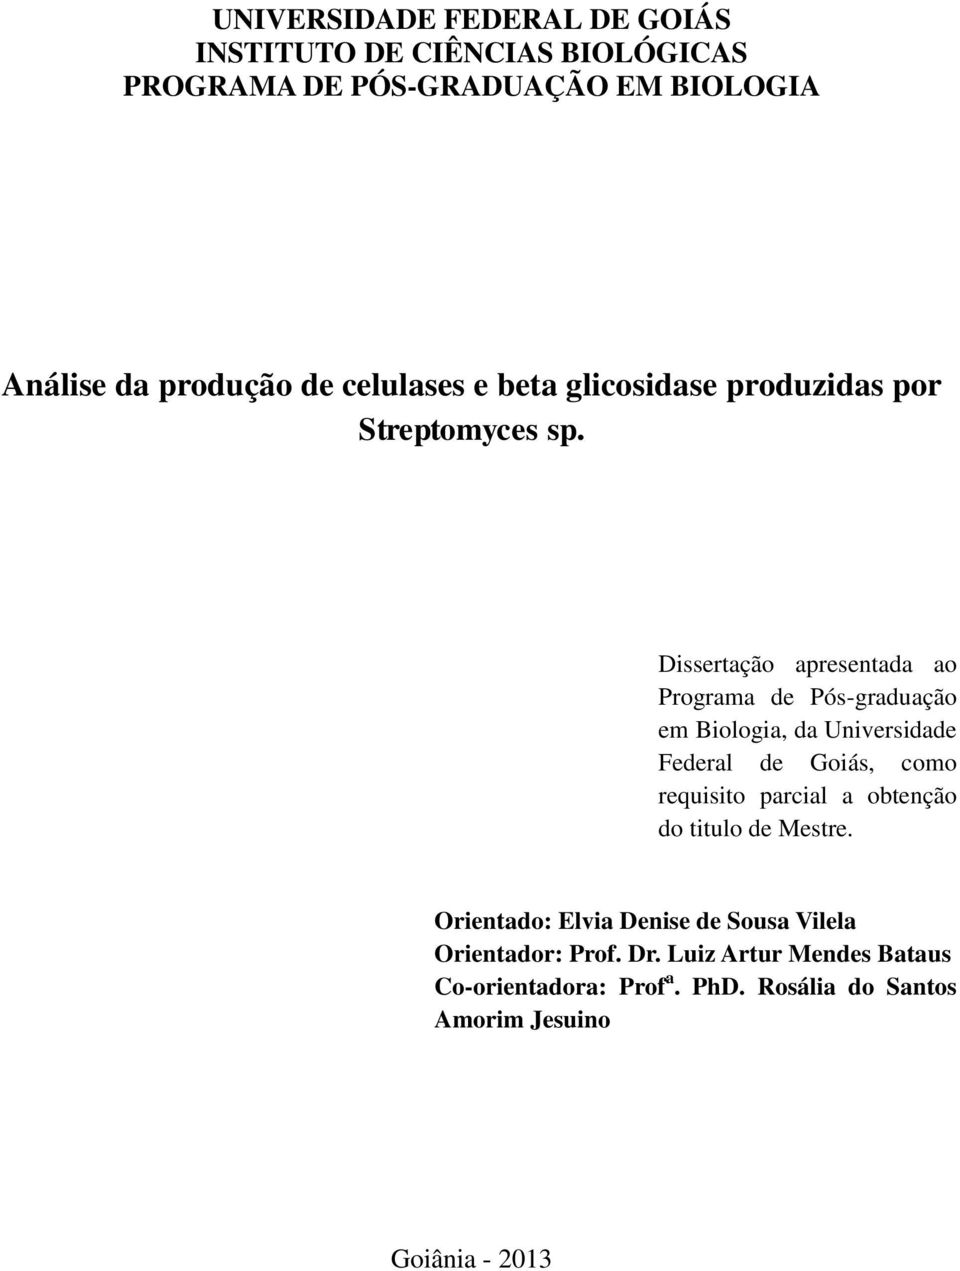 Dissertação apresentada ao Programa de Pós-graduação em Biologia, da Universidade Federal de Goiás, como requisito parcial a